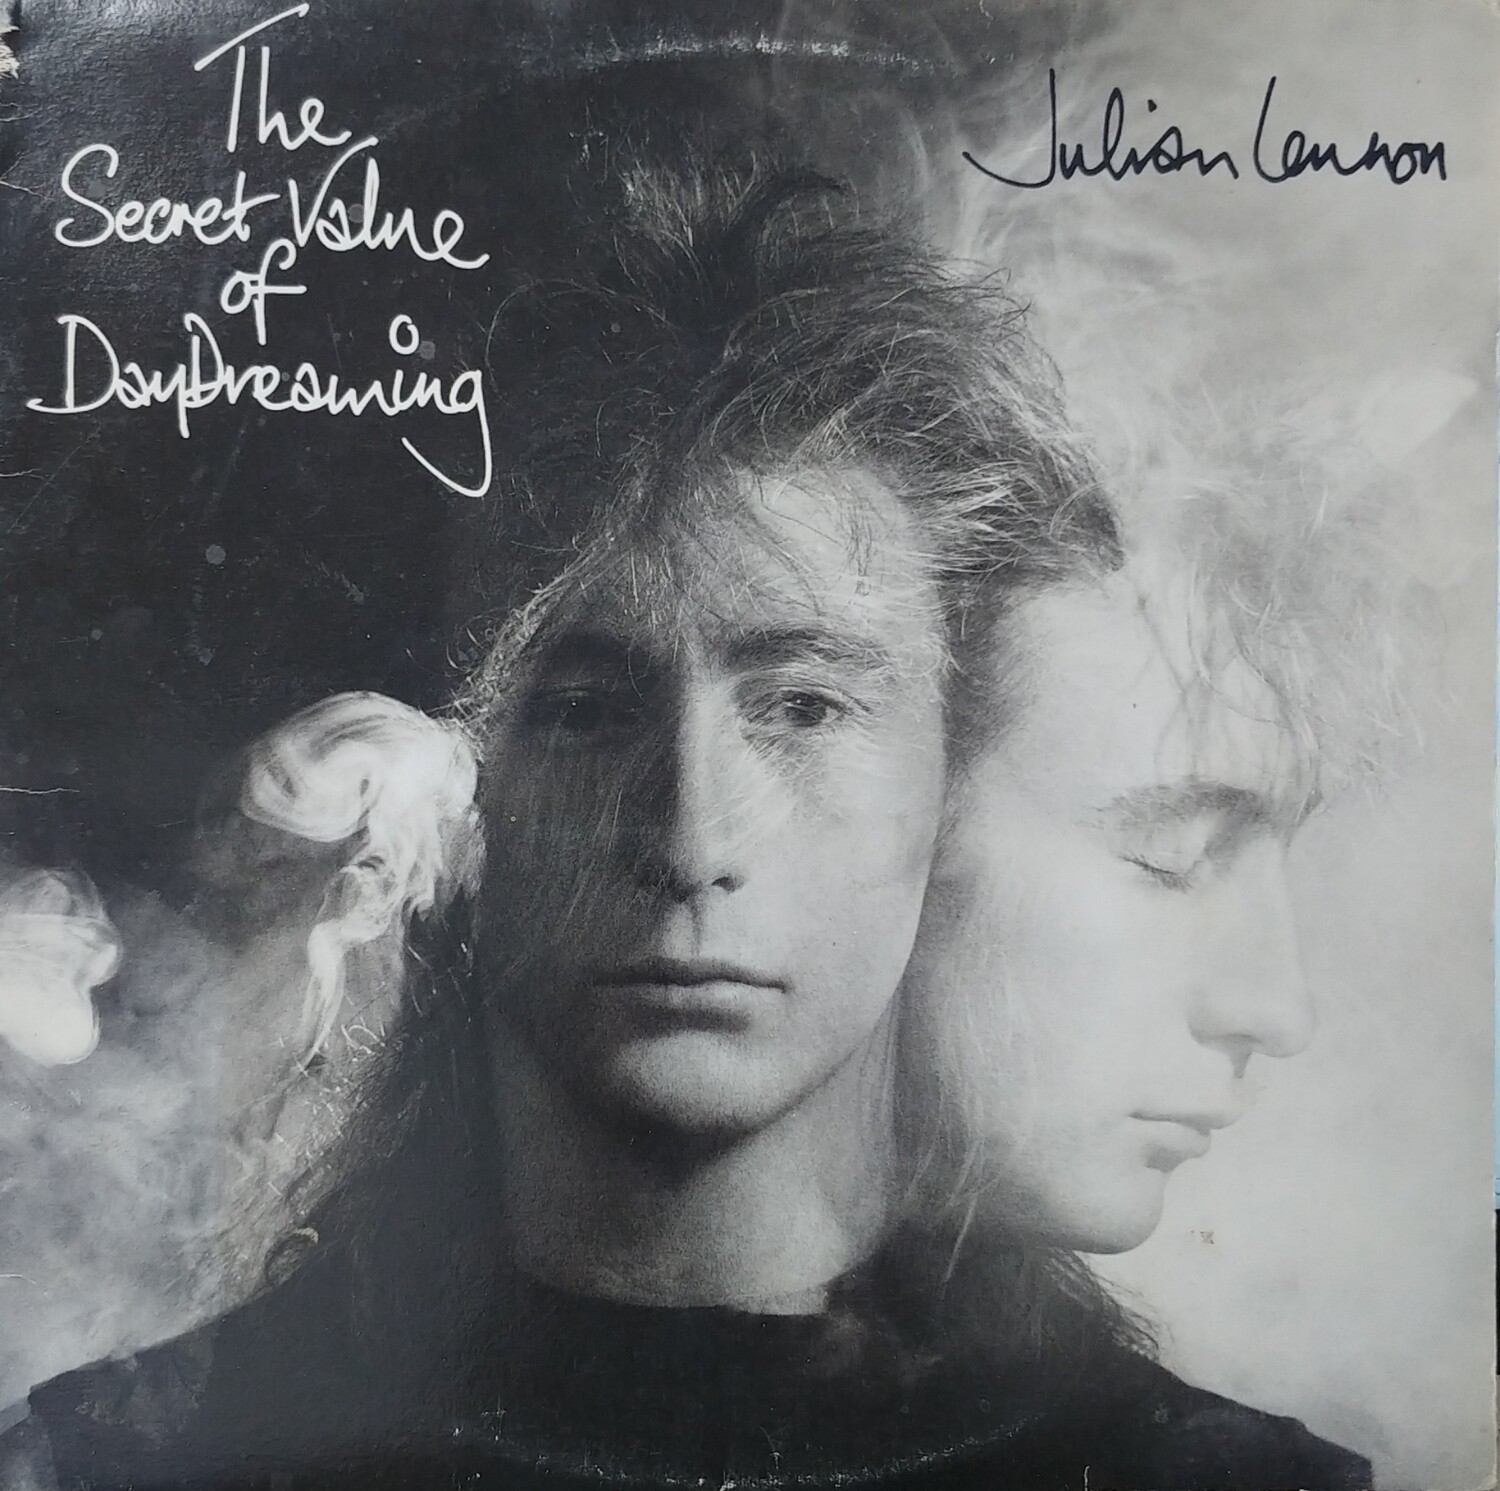 Julian Lennon - The secret value of daydream